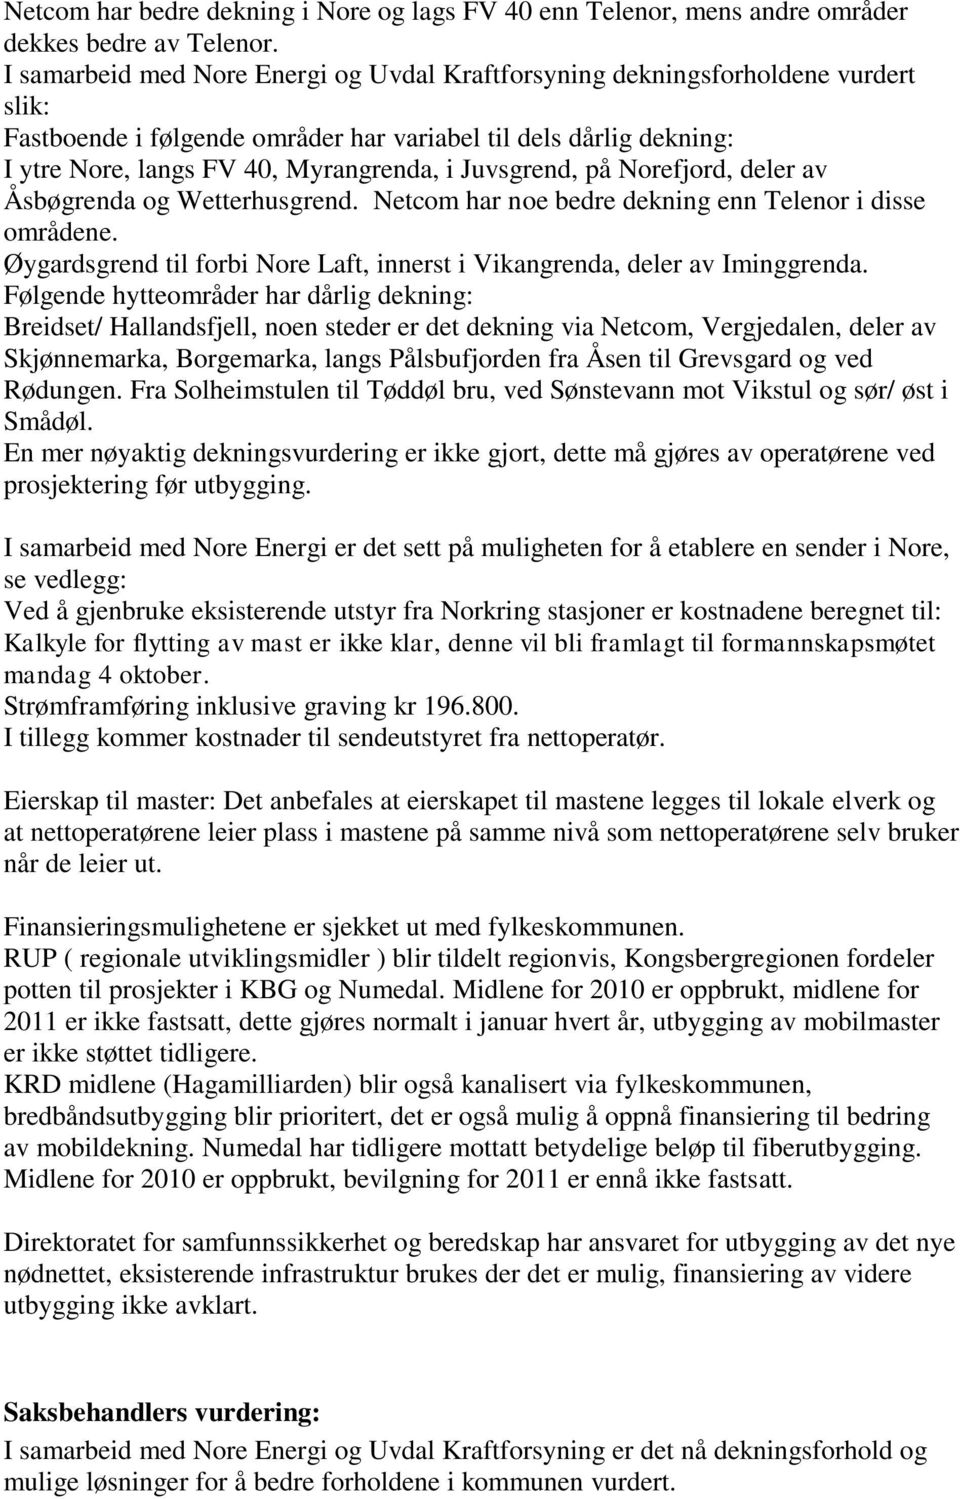 Juvsgrend, på Norefjord, deler av Åsbøgrenda og Wetterhusgrend. Netcom har noe bedre dekning enn Telenor i disse områdene.